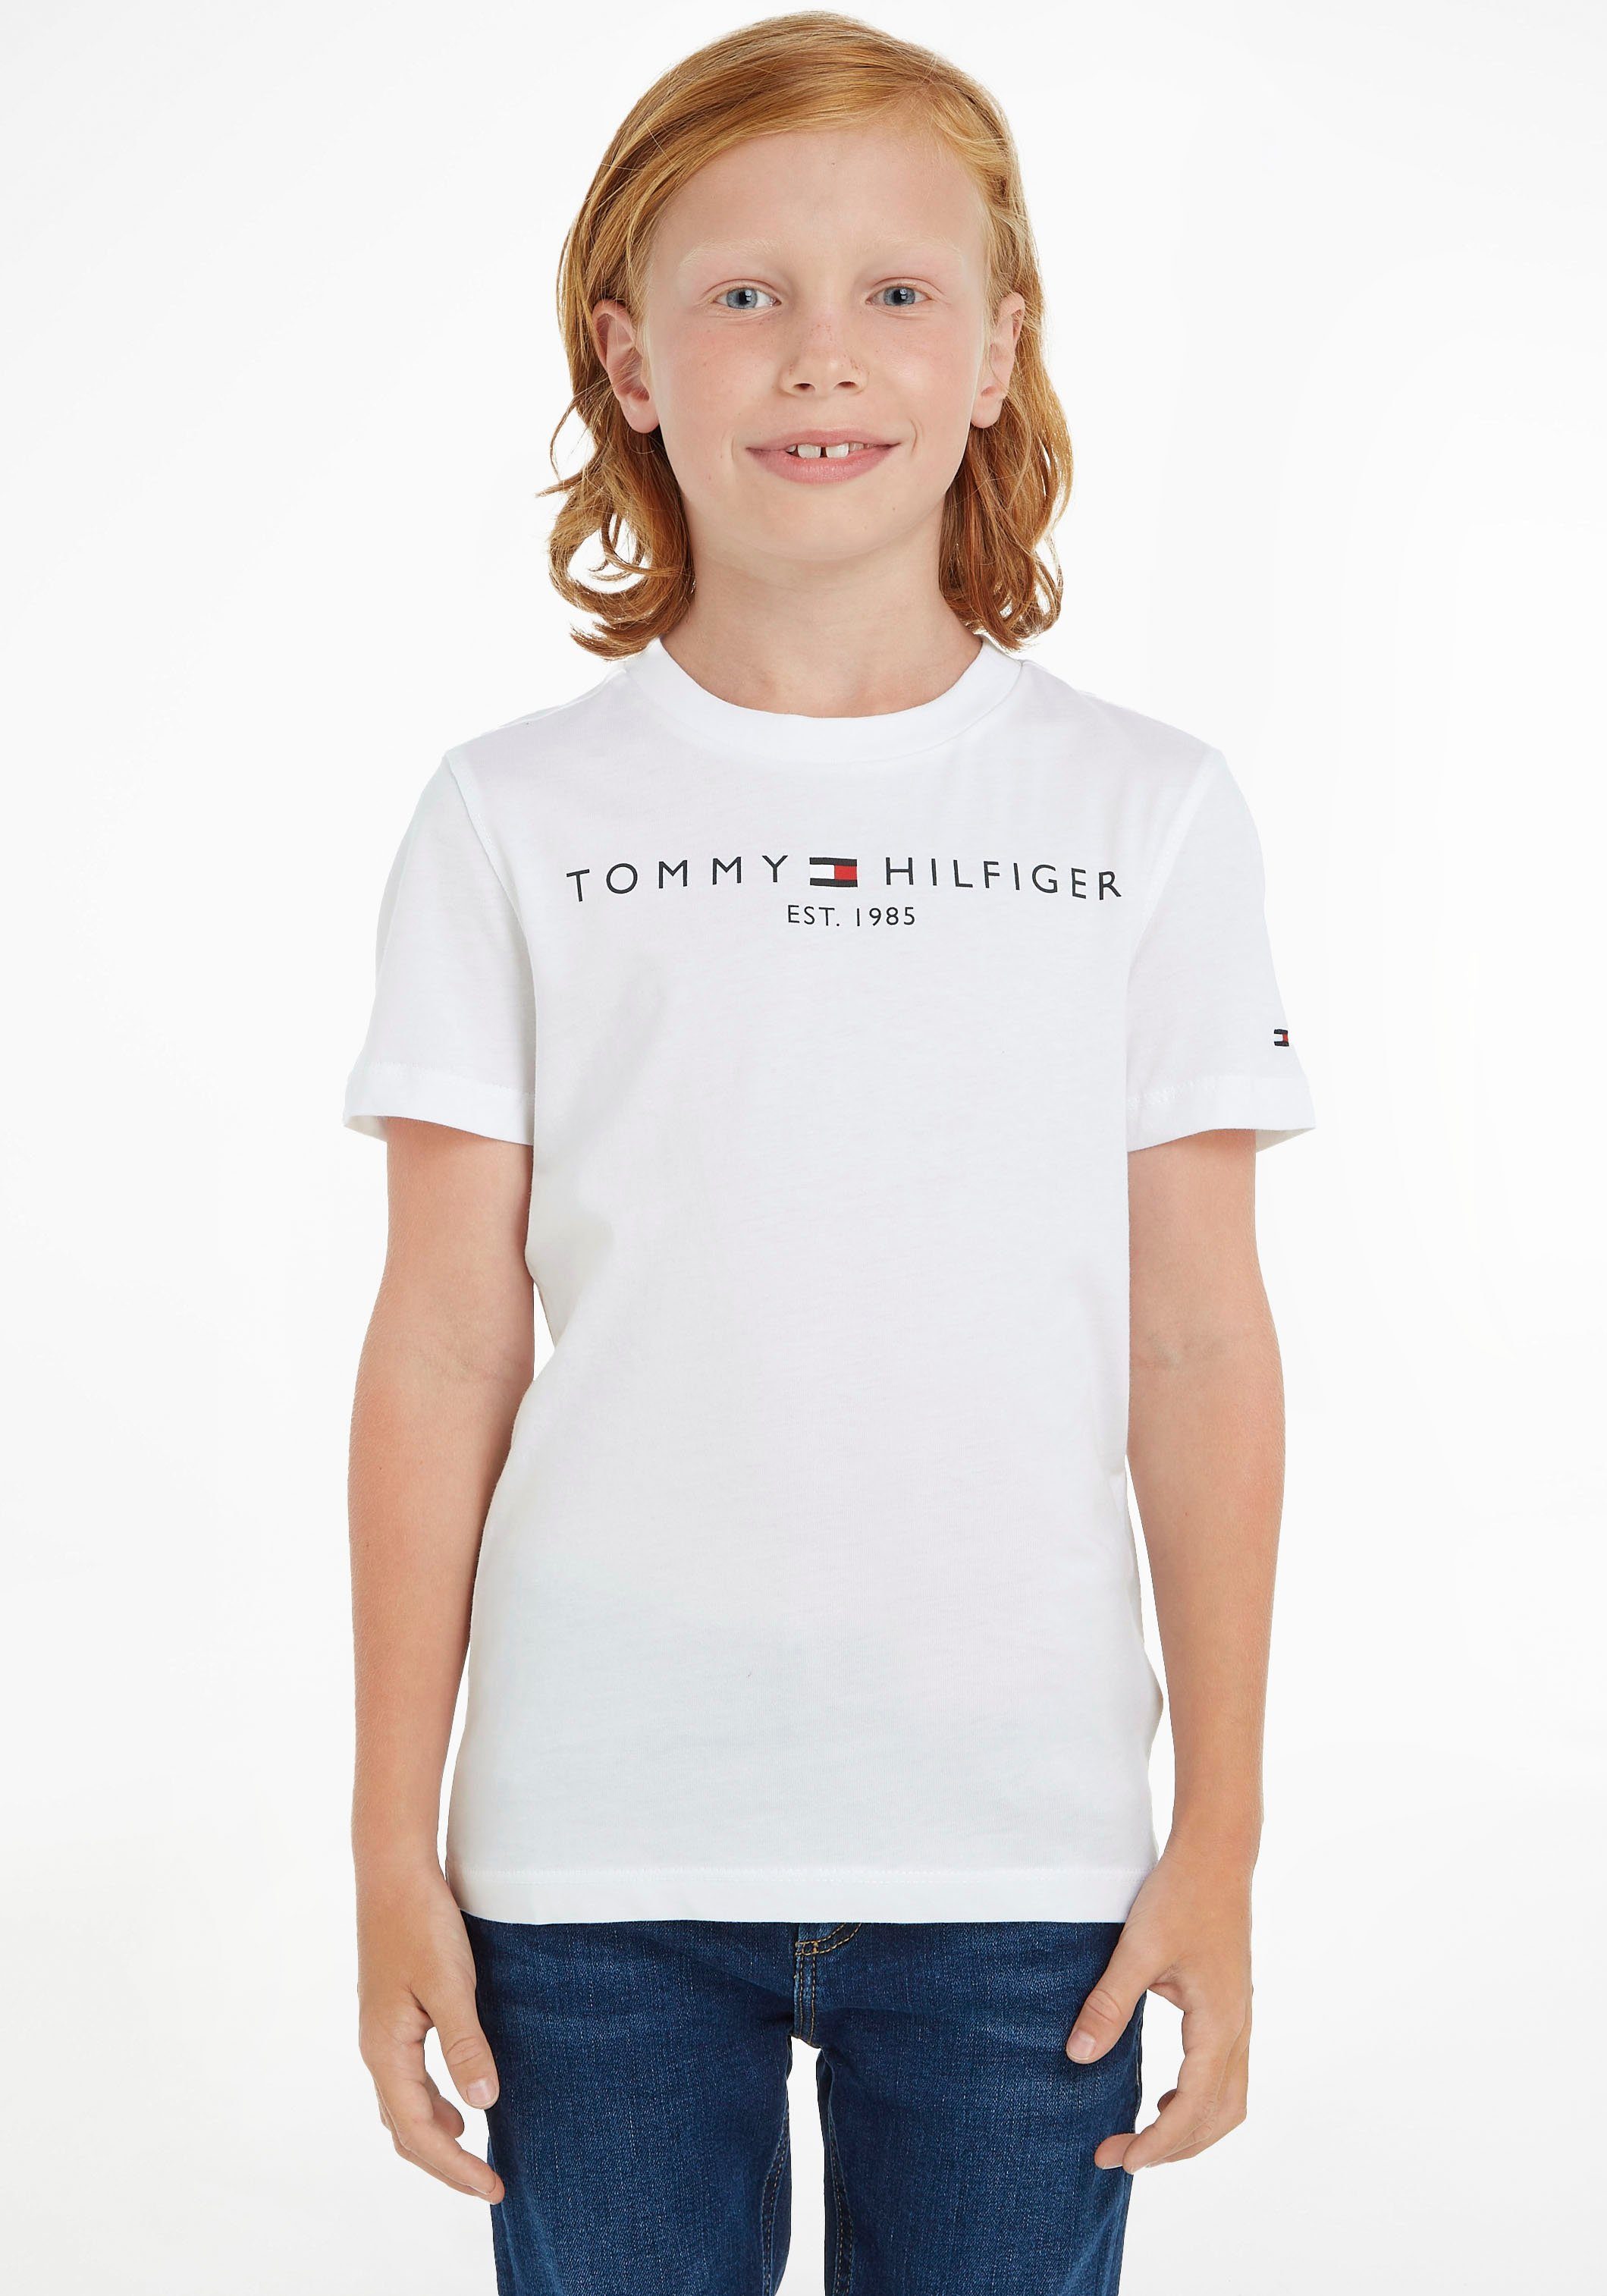 Tommy Hilfiger T-Shirt Mädchen Kinder MiniMe,für Jungen Junior und TEE Kids ESSENTIAL